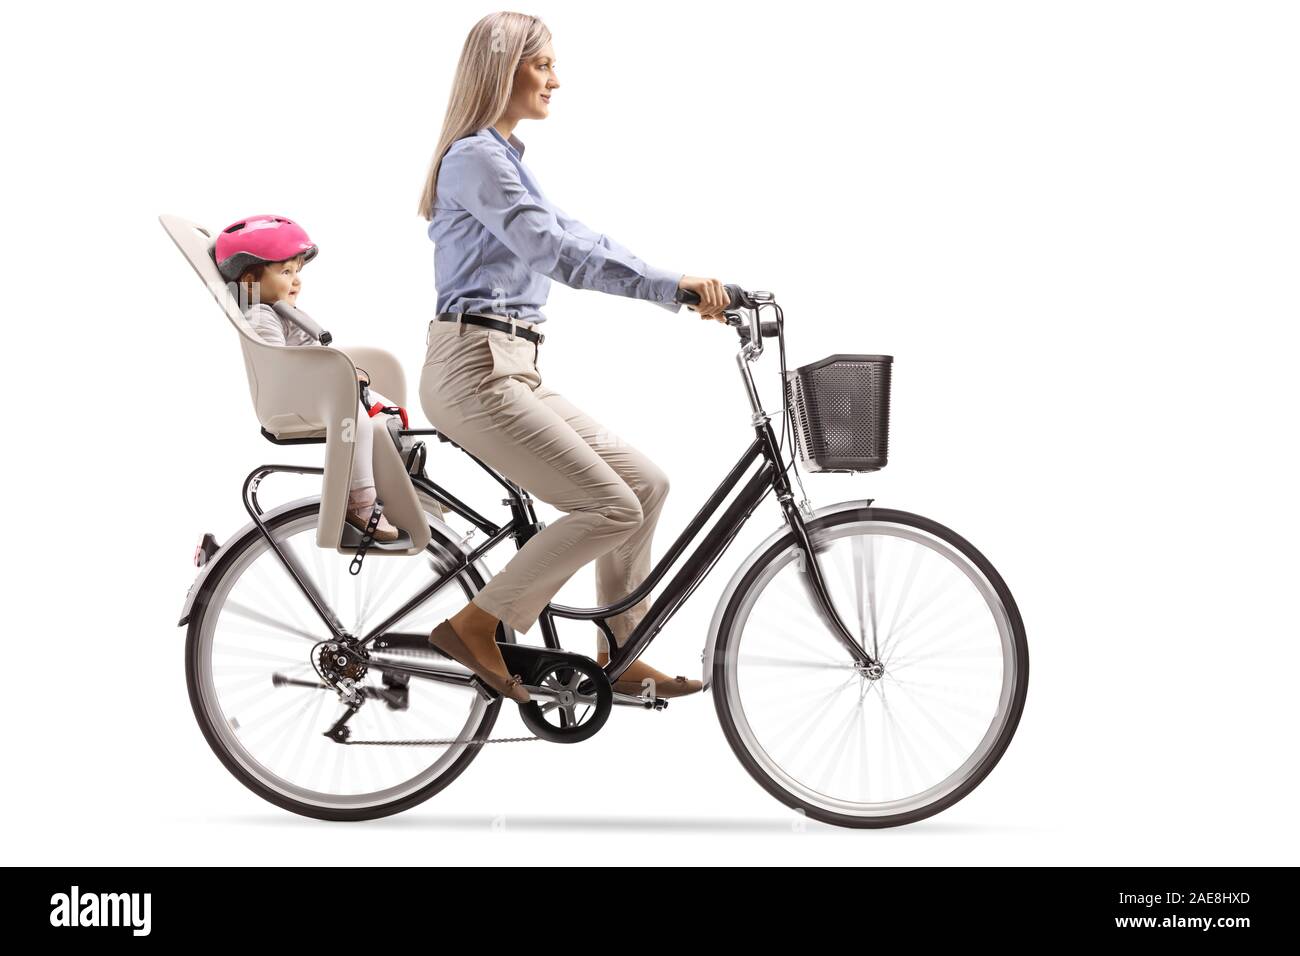 Lunghezza piena ripresa di profilo di una madre di una bicicletta con un bambino in un posto isolato su sfondo bianco Foto Stock